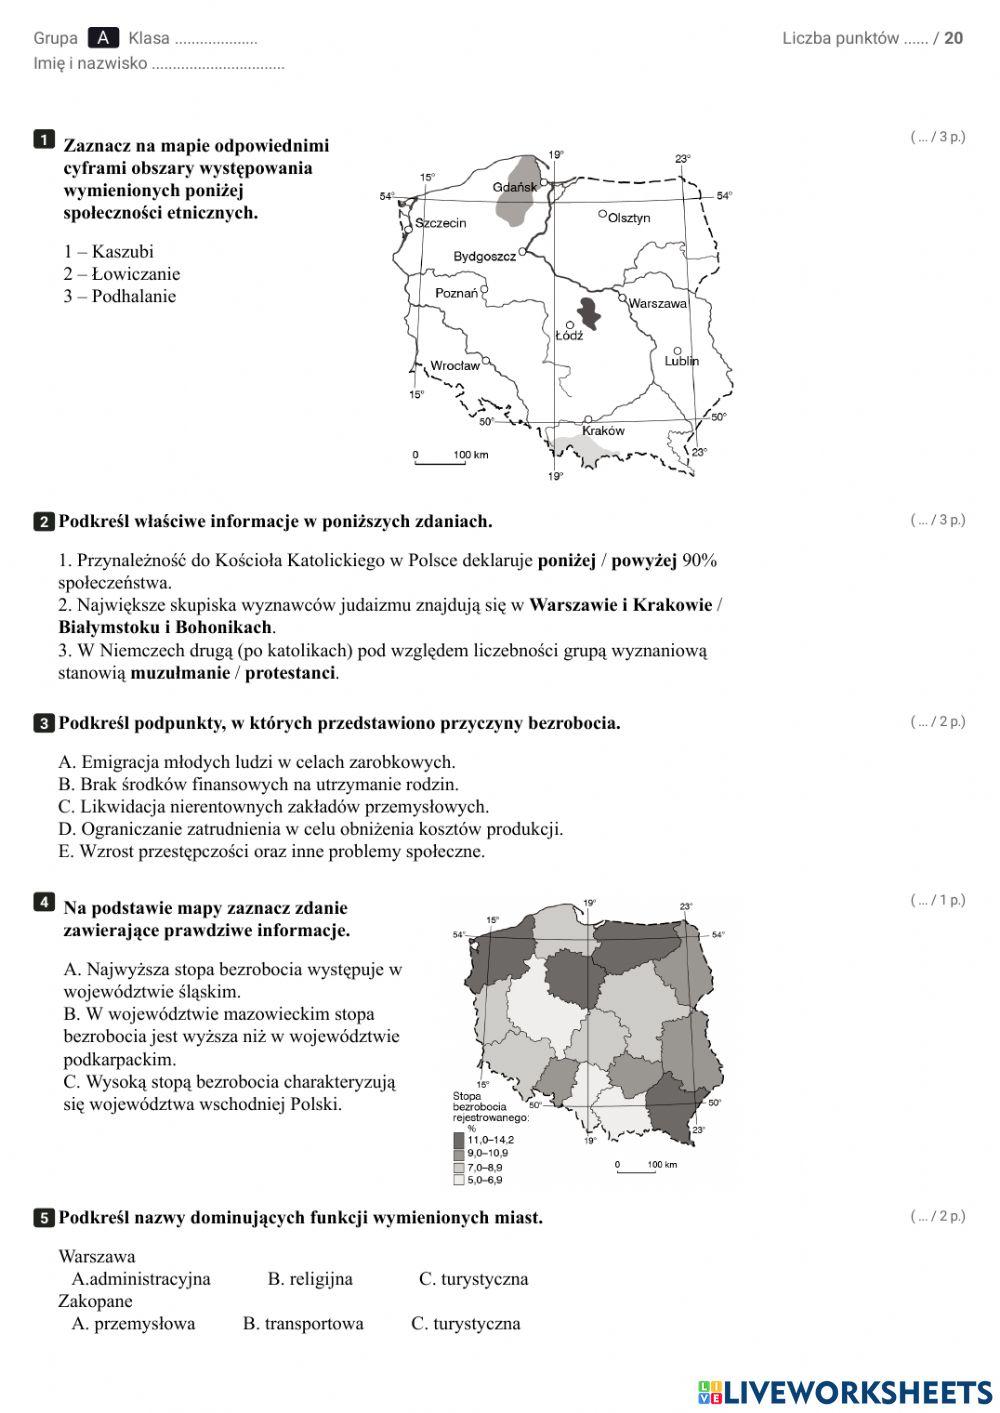 Ludność i procesy demograficzne w Polsce